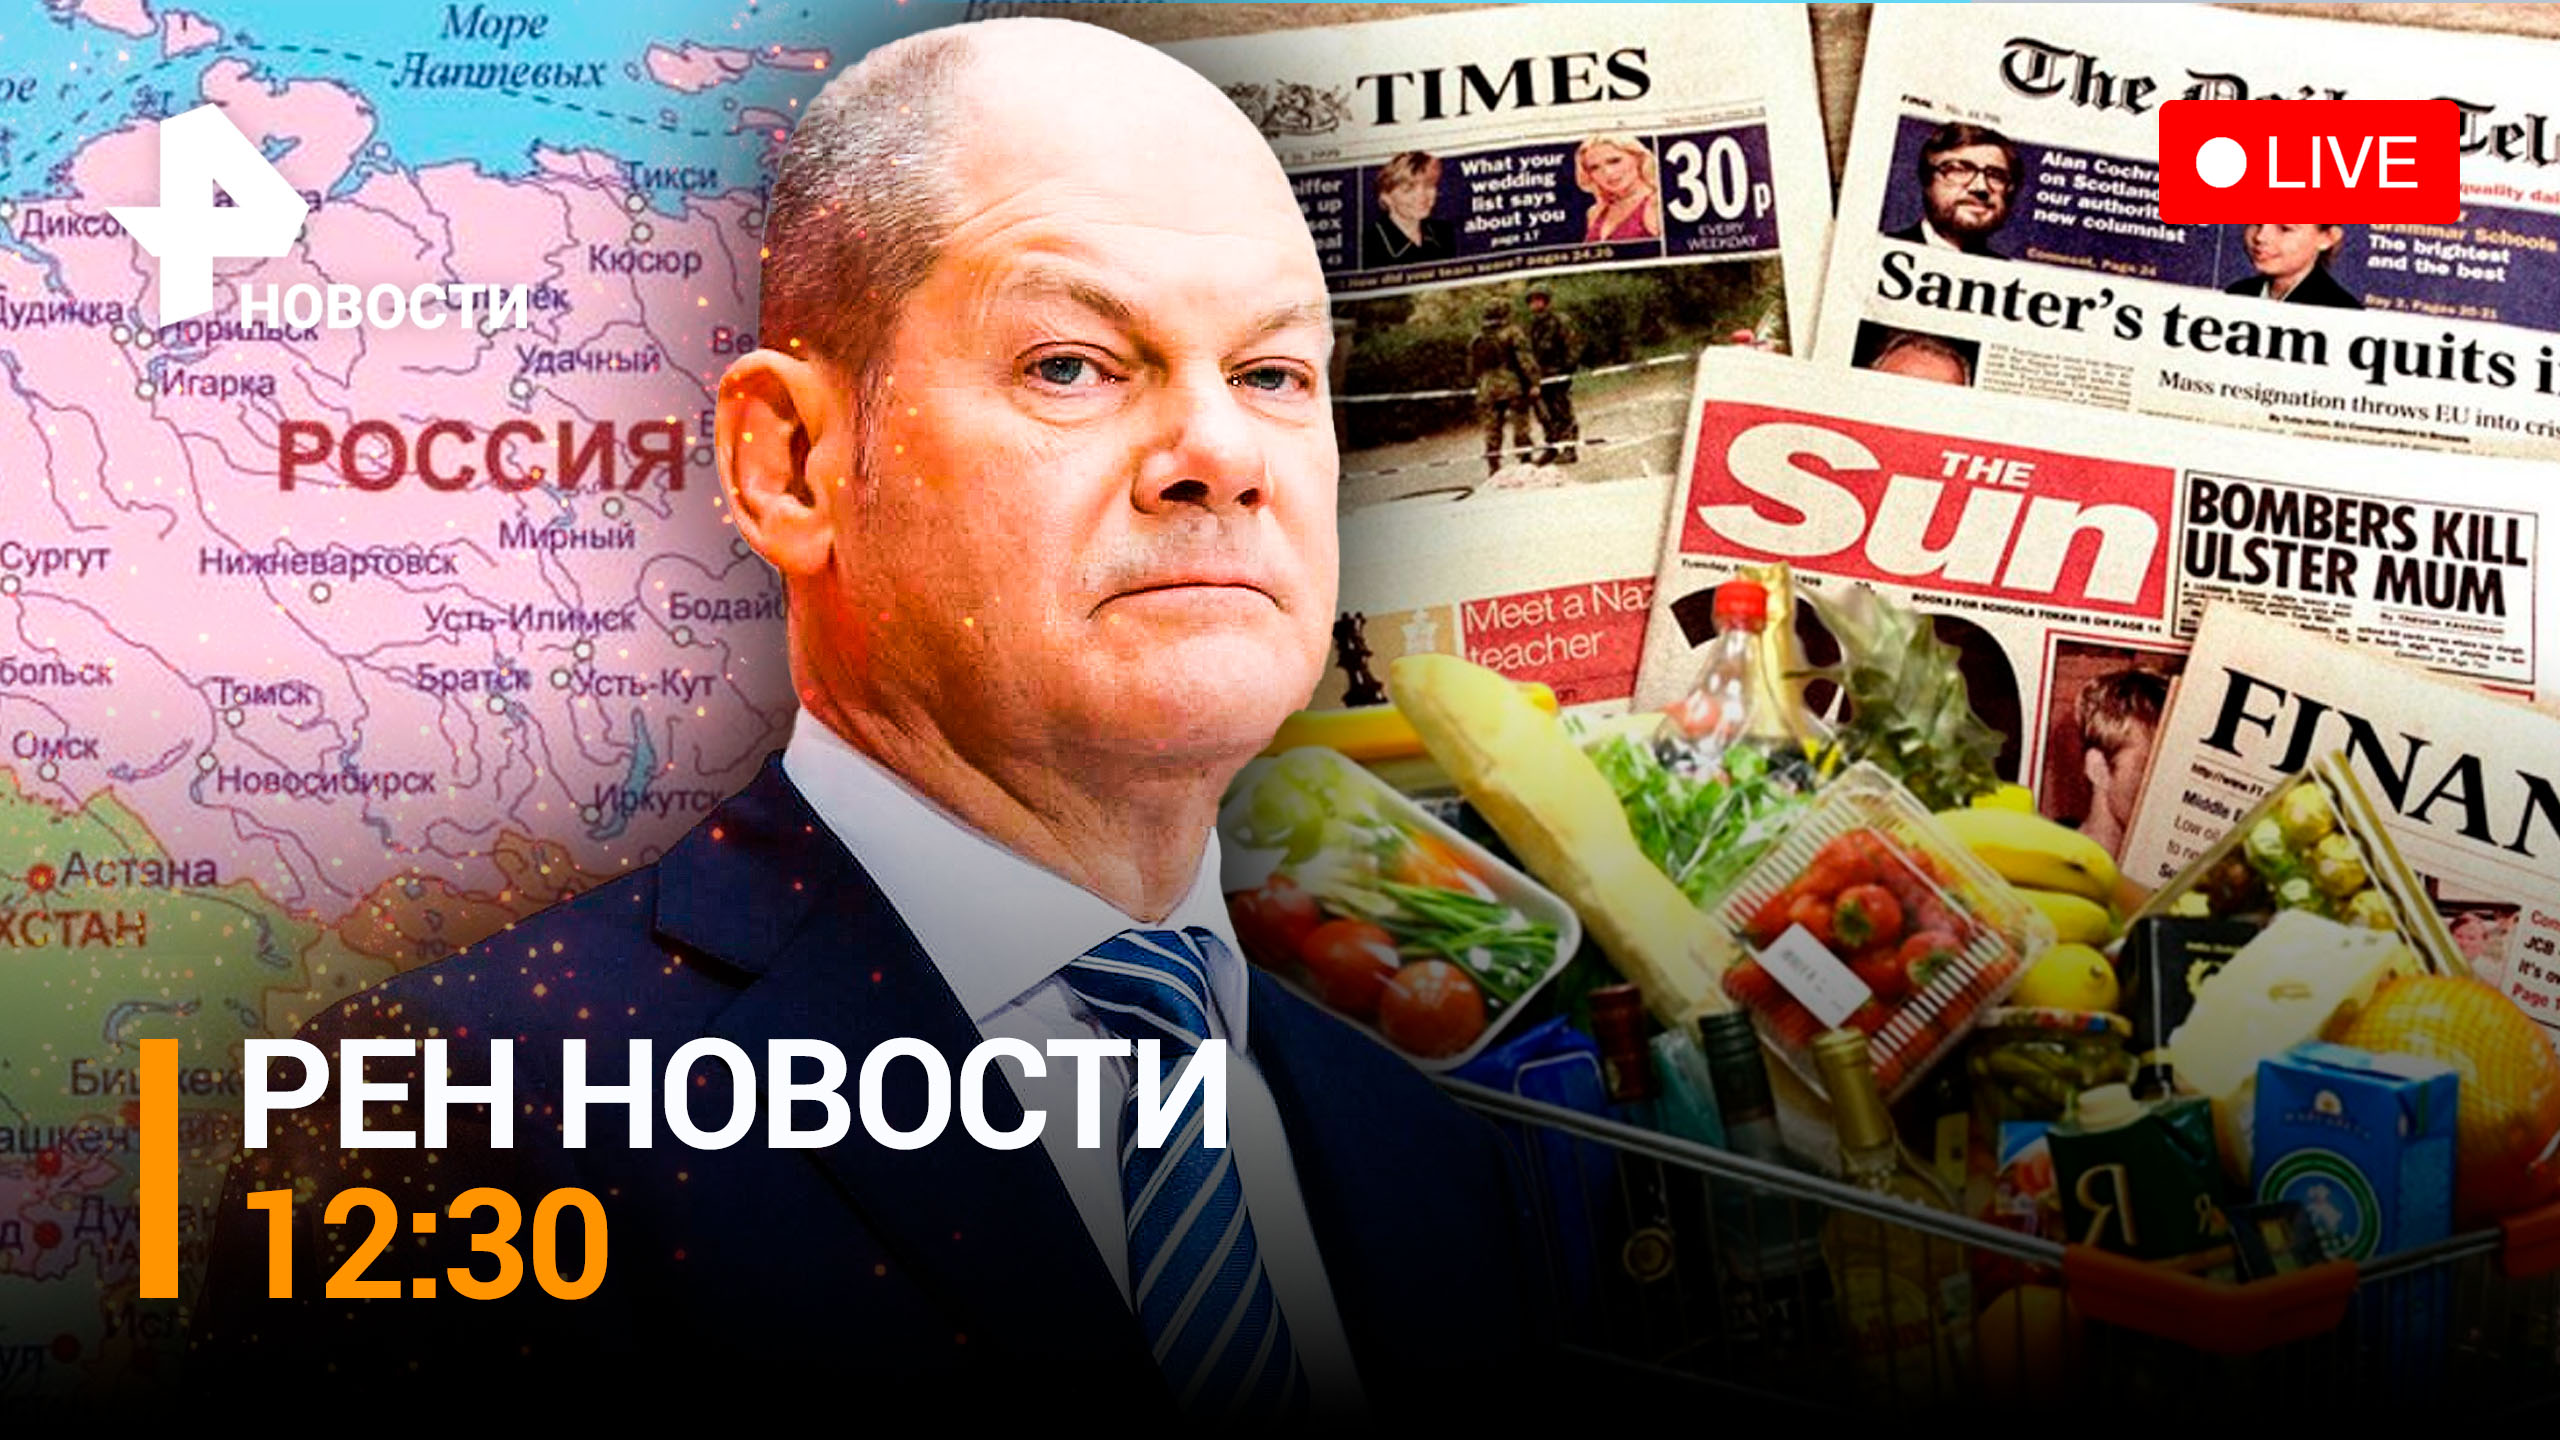 Рубль не рухнул: журналисты США исследовали магазины Москвы / РЕН ТВ НОВОСТИ 12:30 от 16.12.22